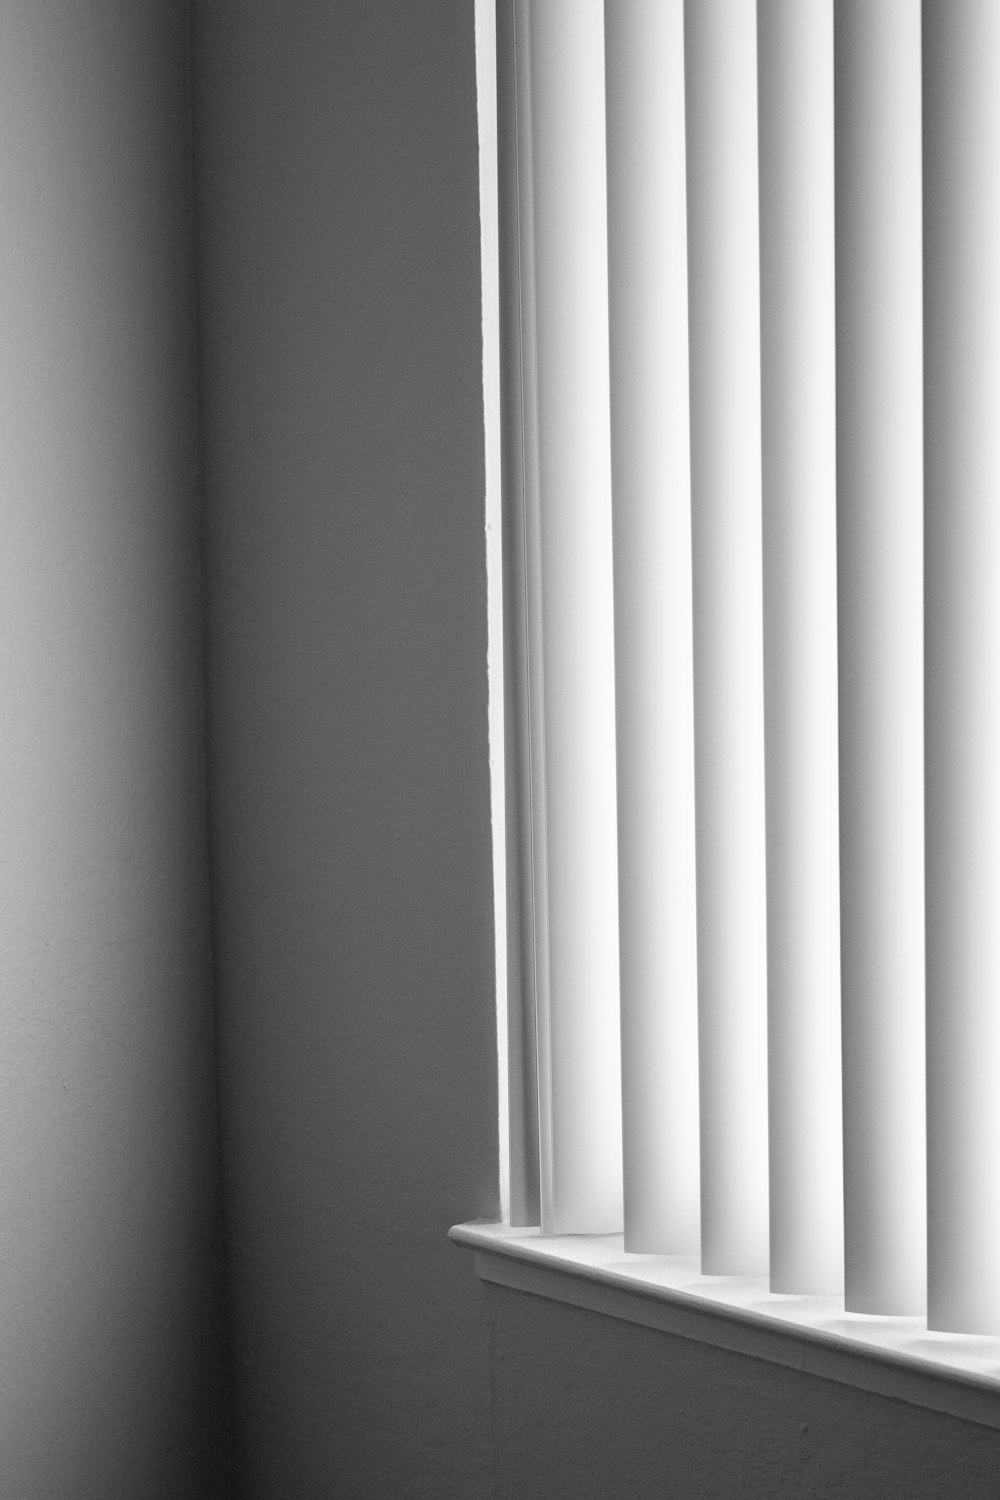 블라인드가 있는 창문의 흑백 사진